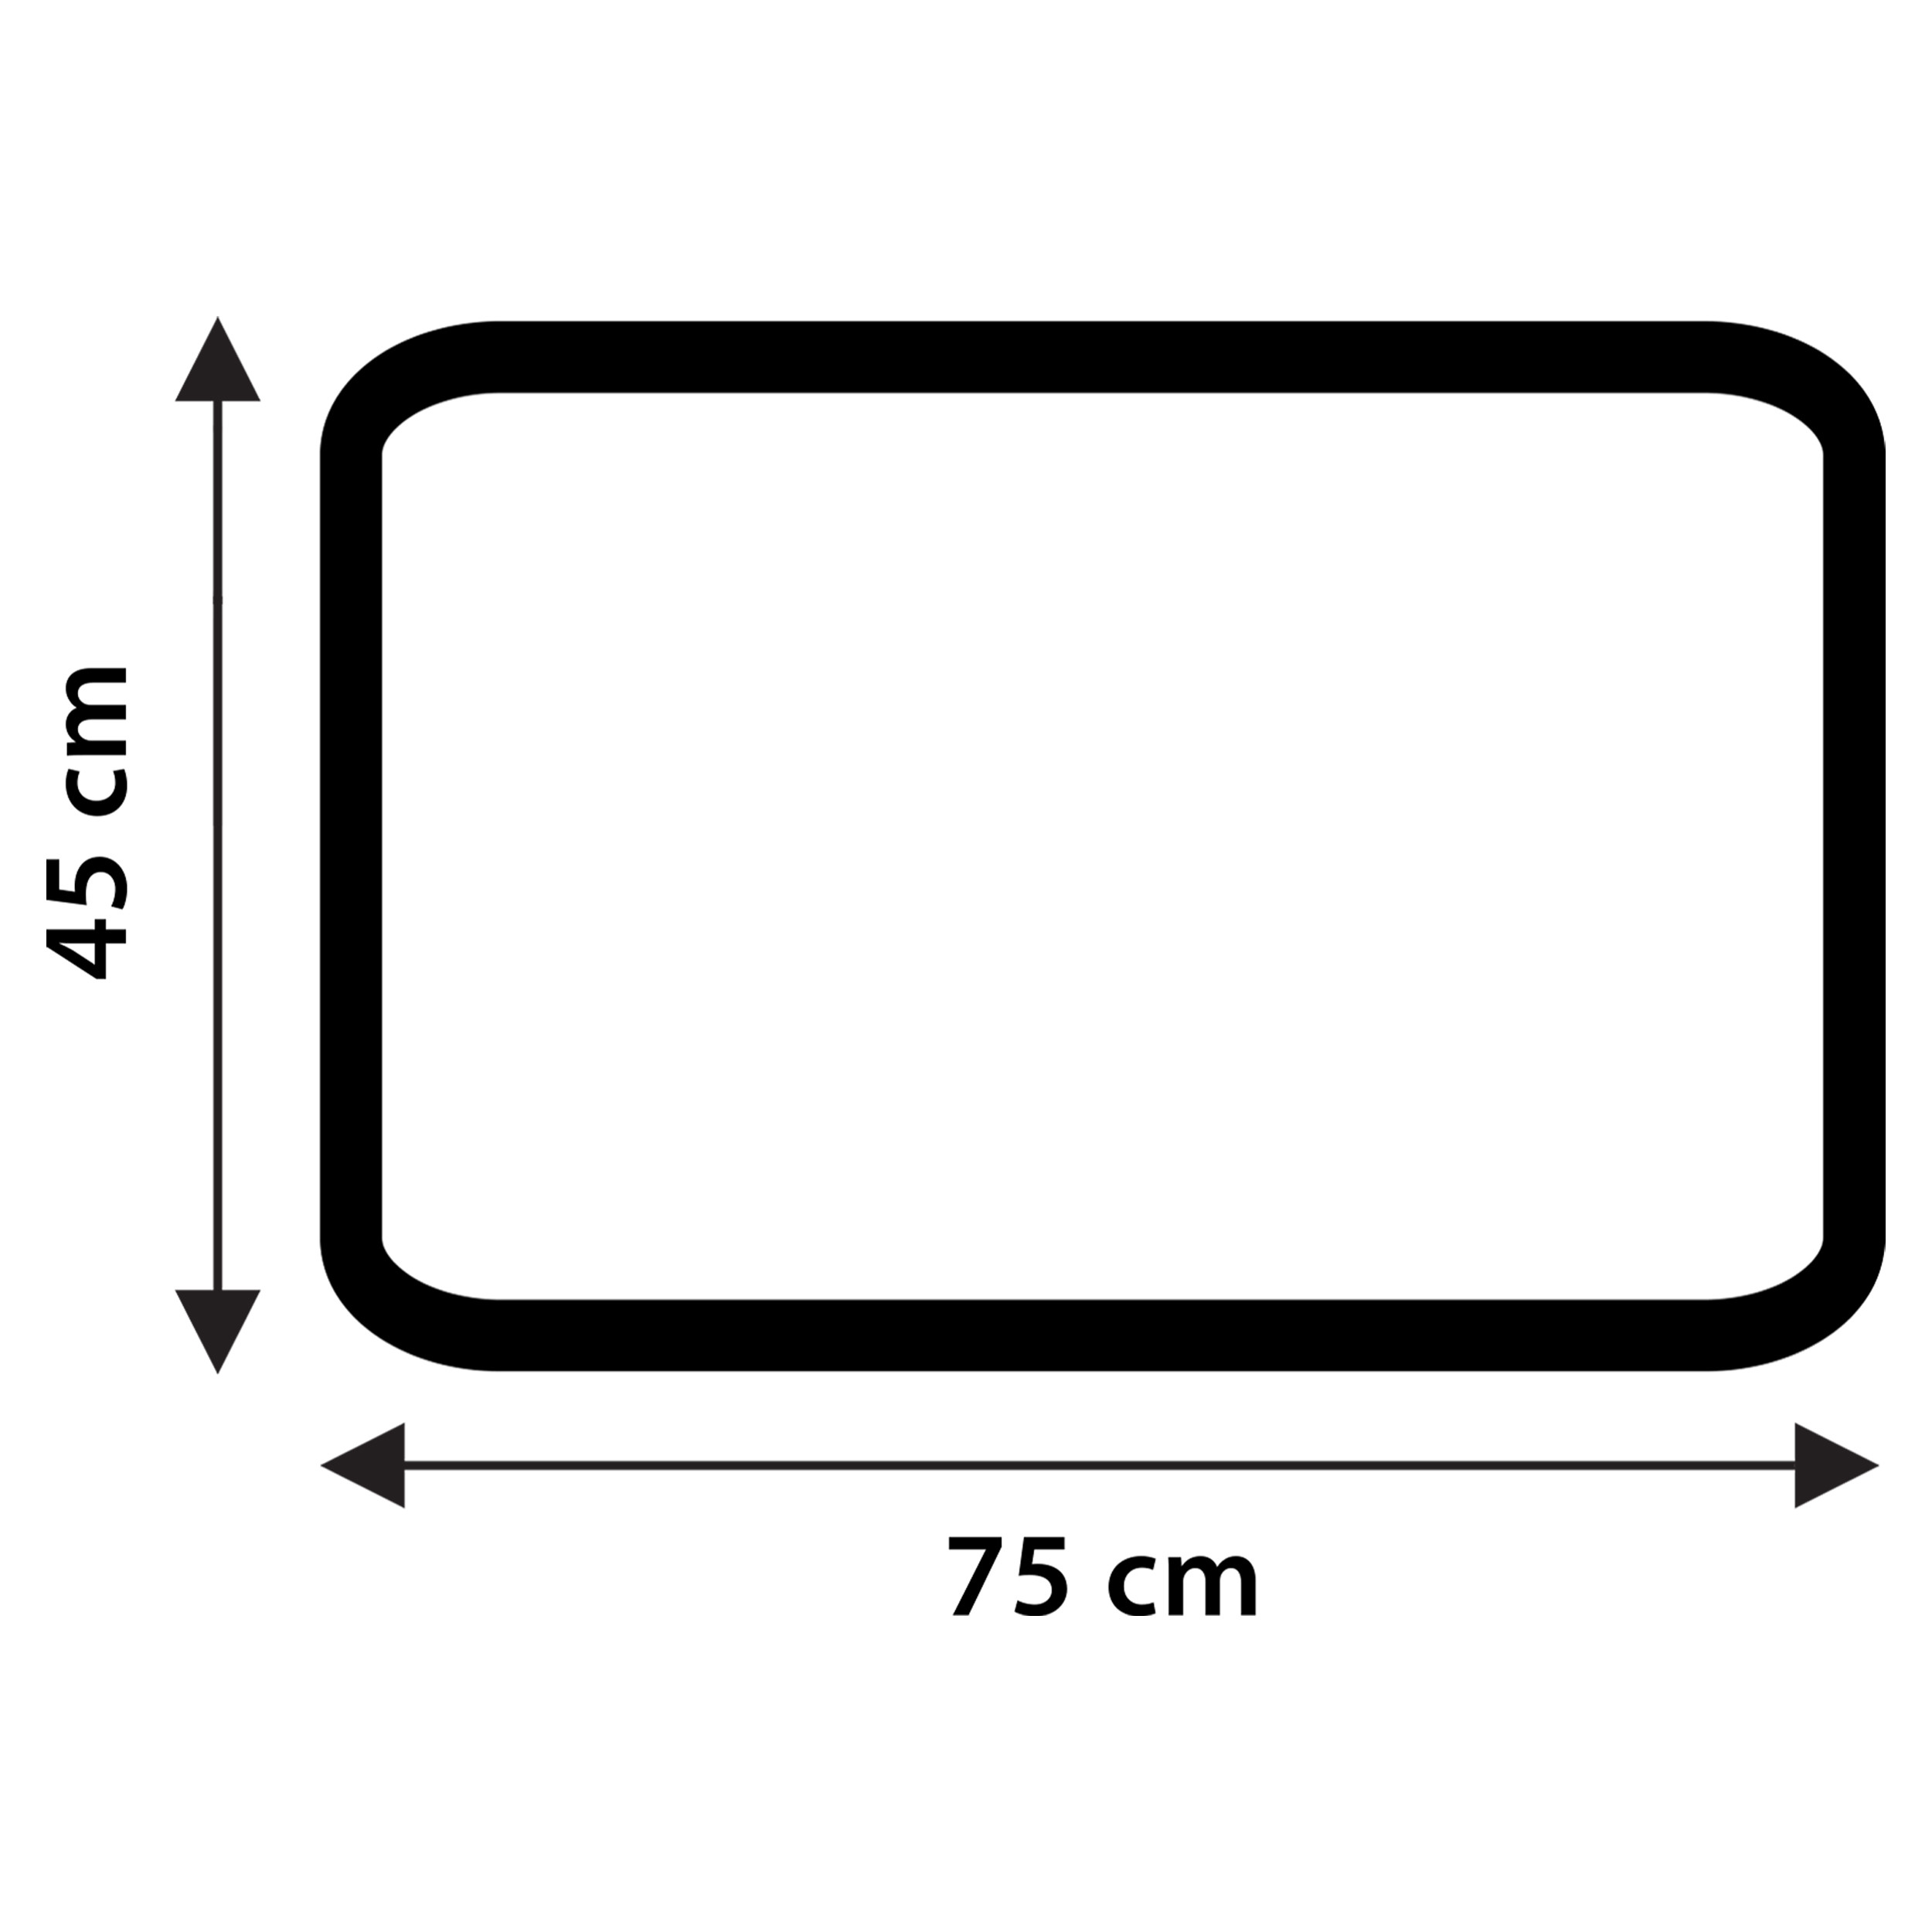 Differnz Stripes badmat geschikt voor vloerverwarming 100% katoen 45 x 75 cm taupe